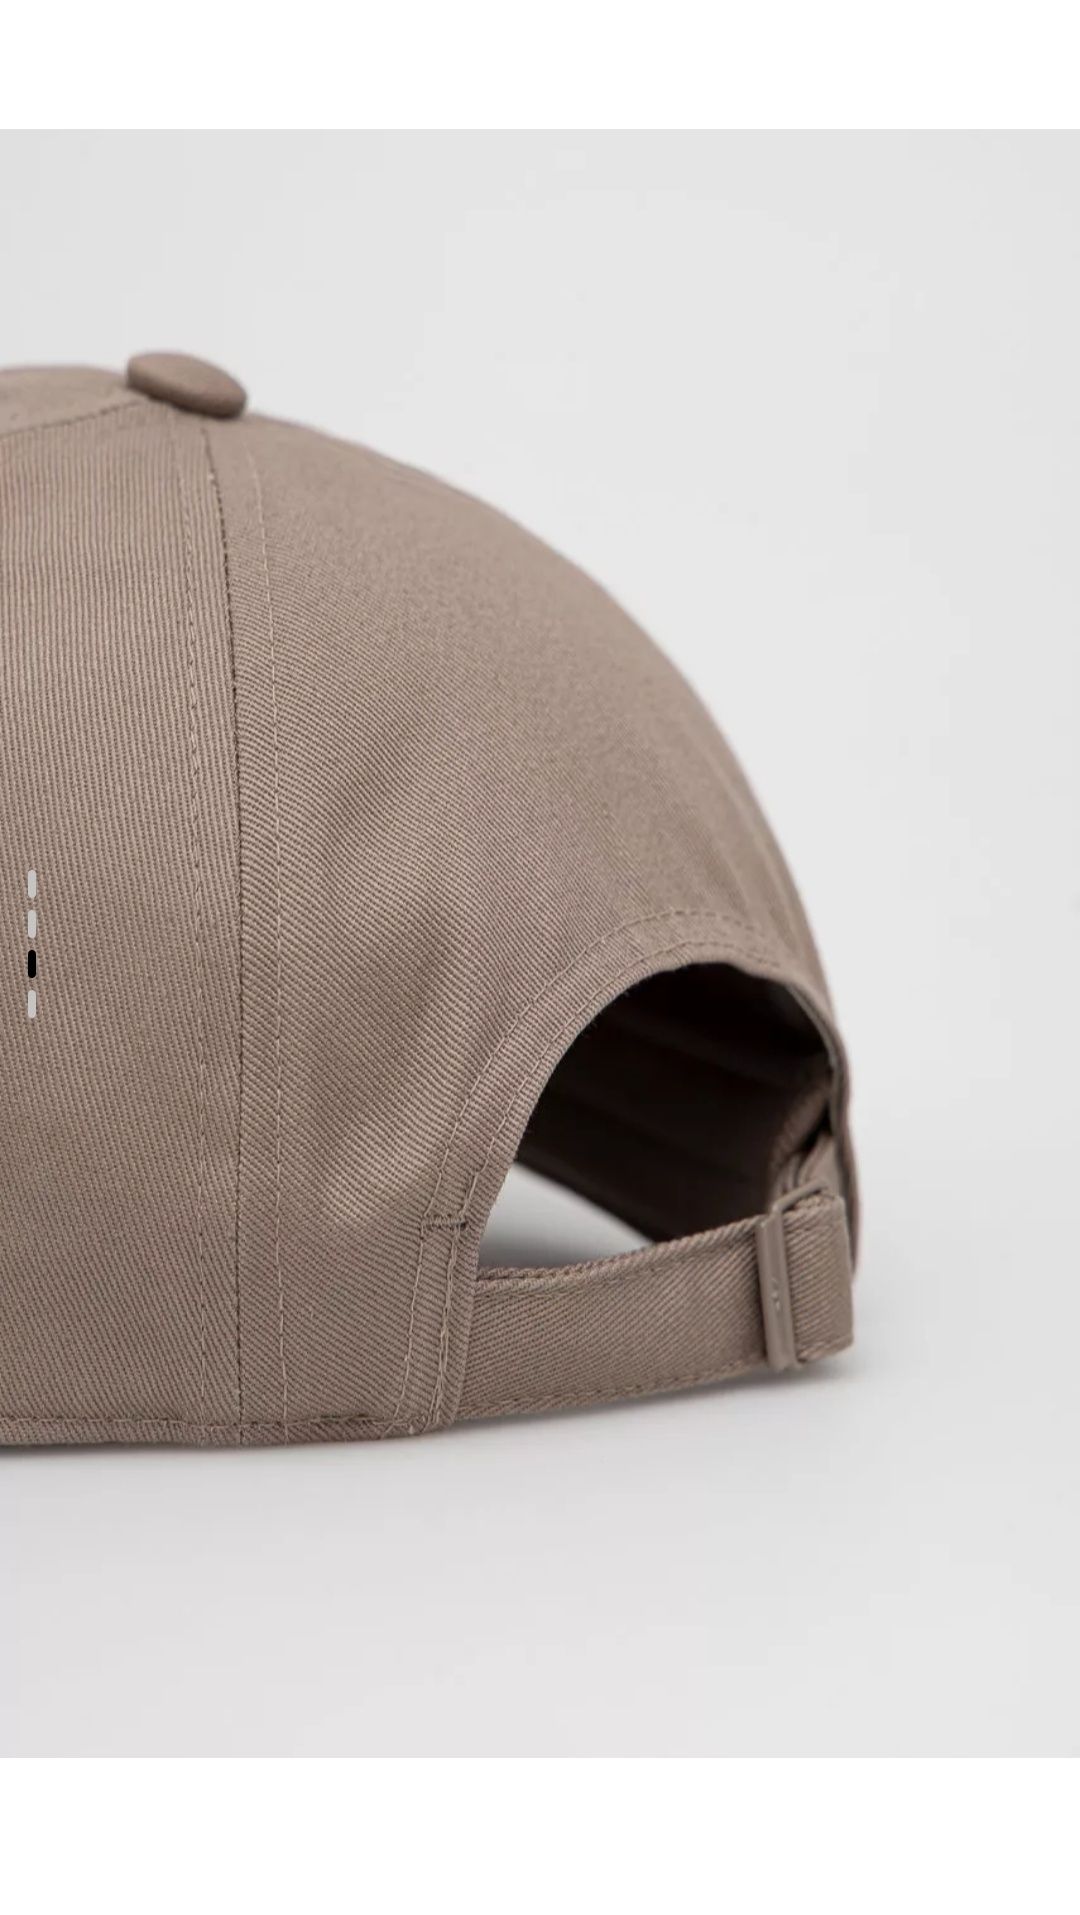 Нова кепка Adidas Originals пшеничного кольору